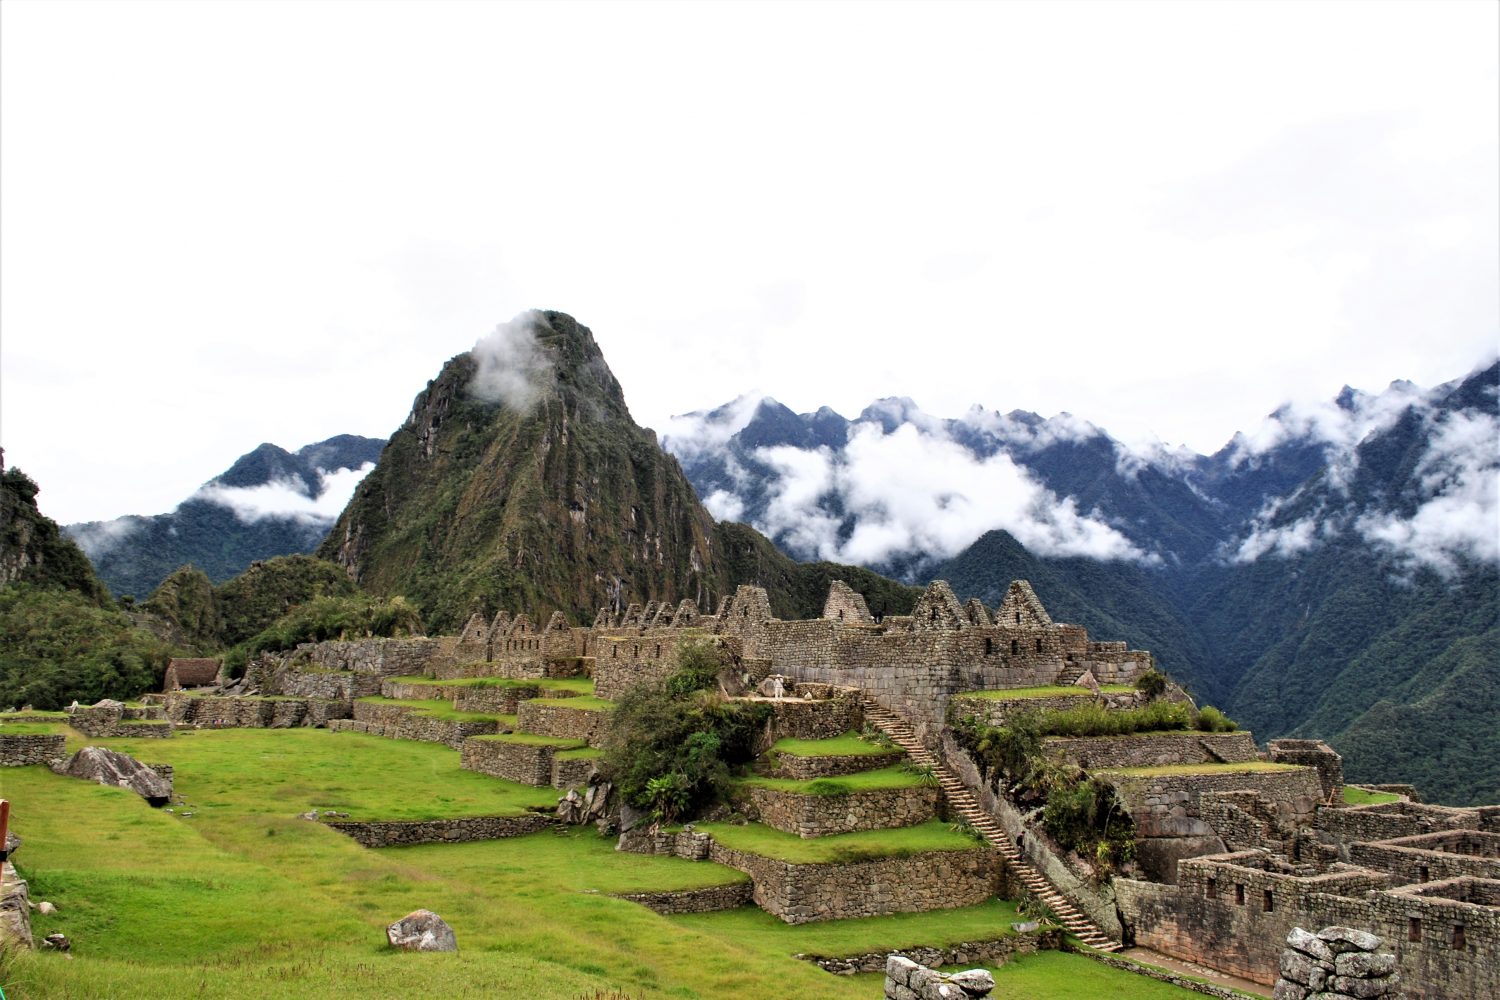 Machu Picchu by Train